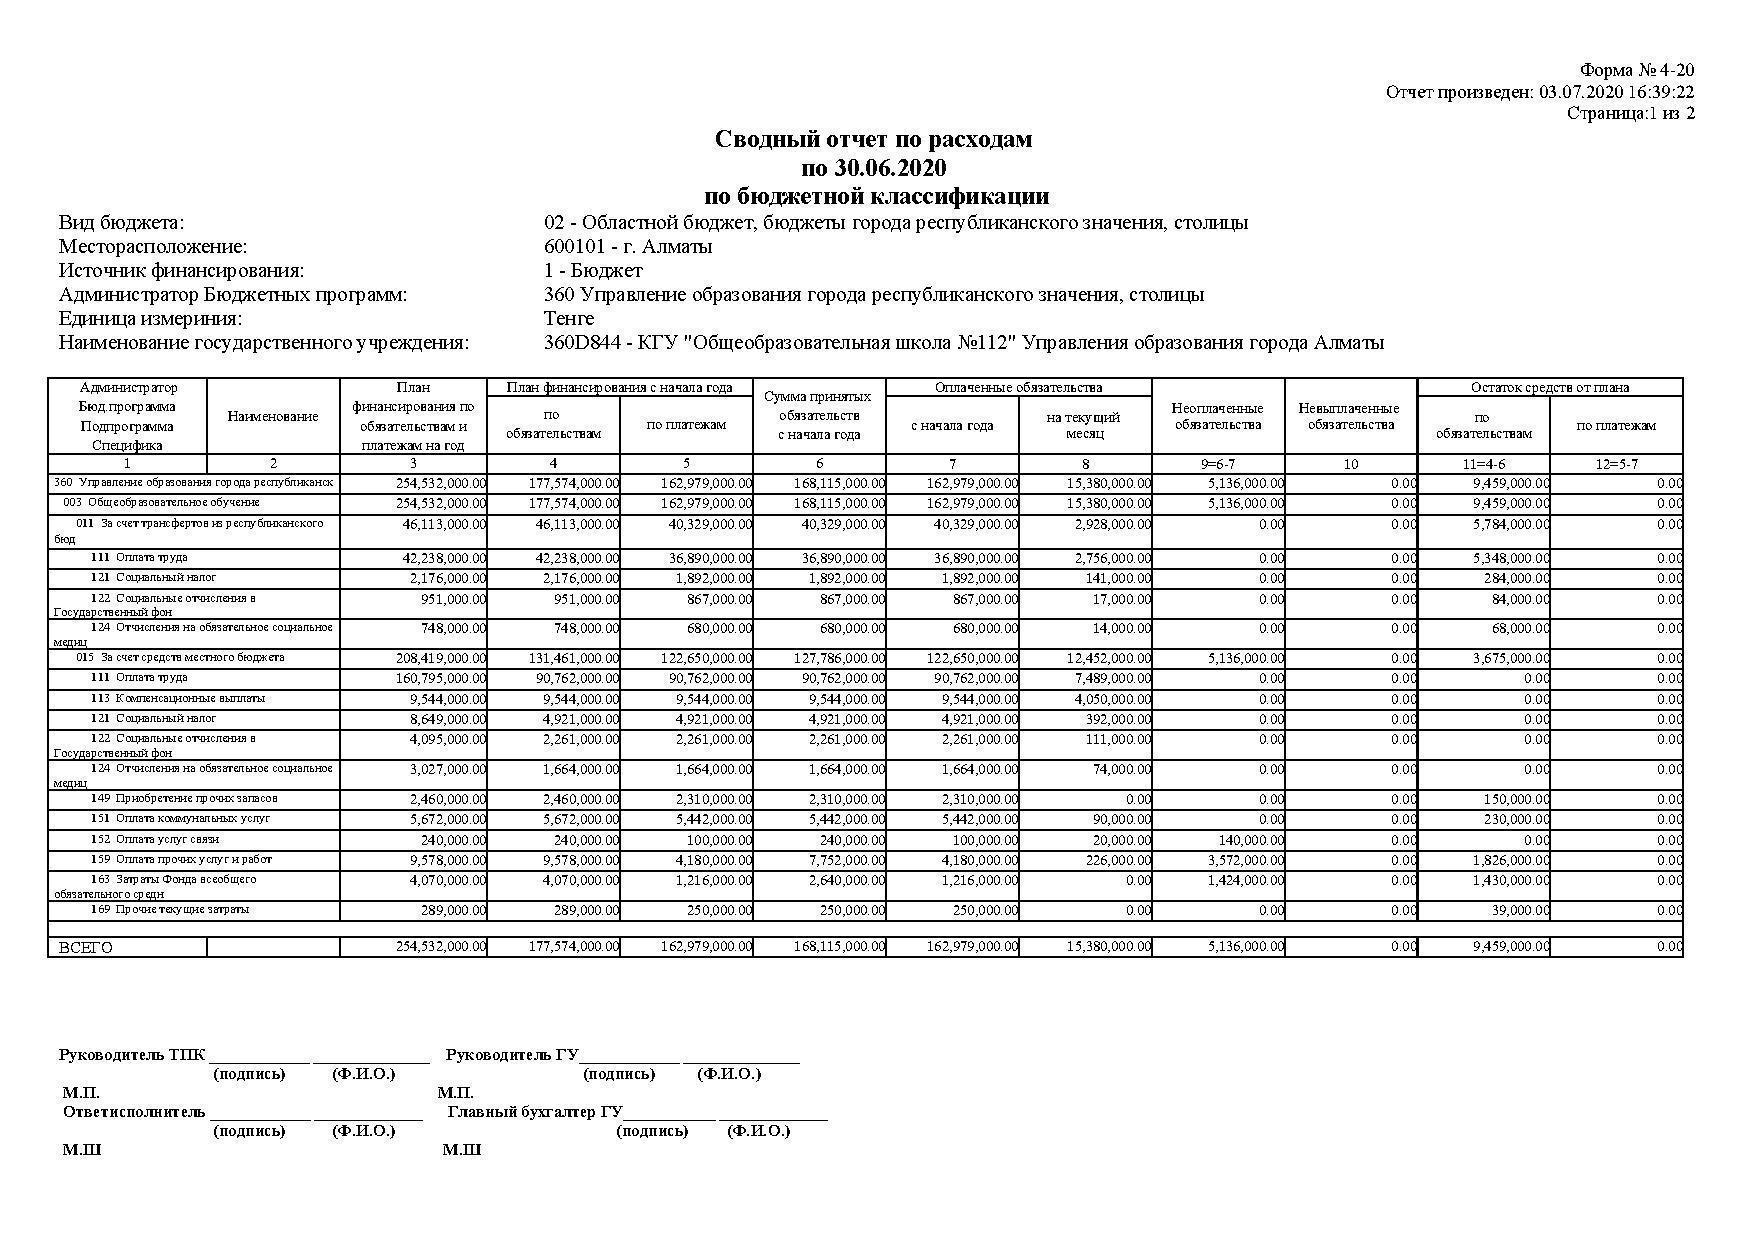 Сводный отчет по расходам по 30.06.2020 по бюджетной классификации